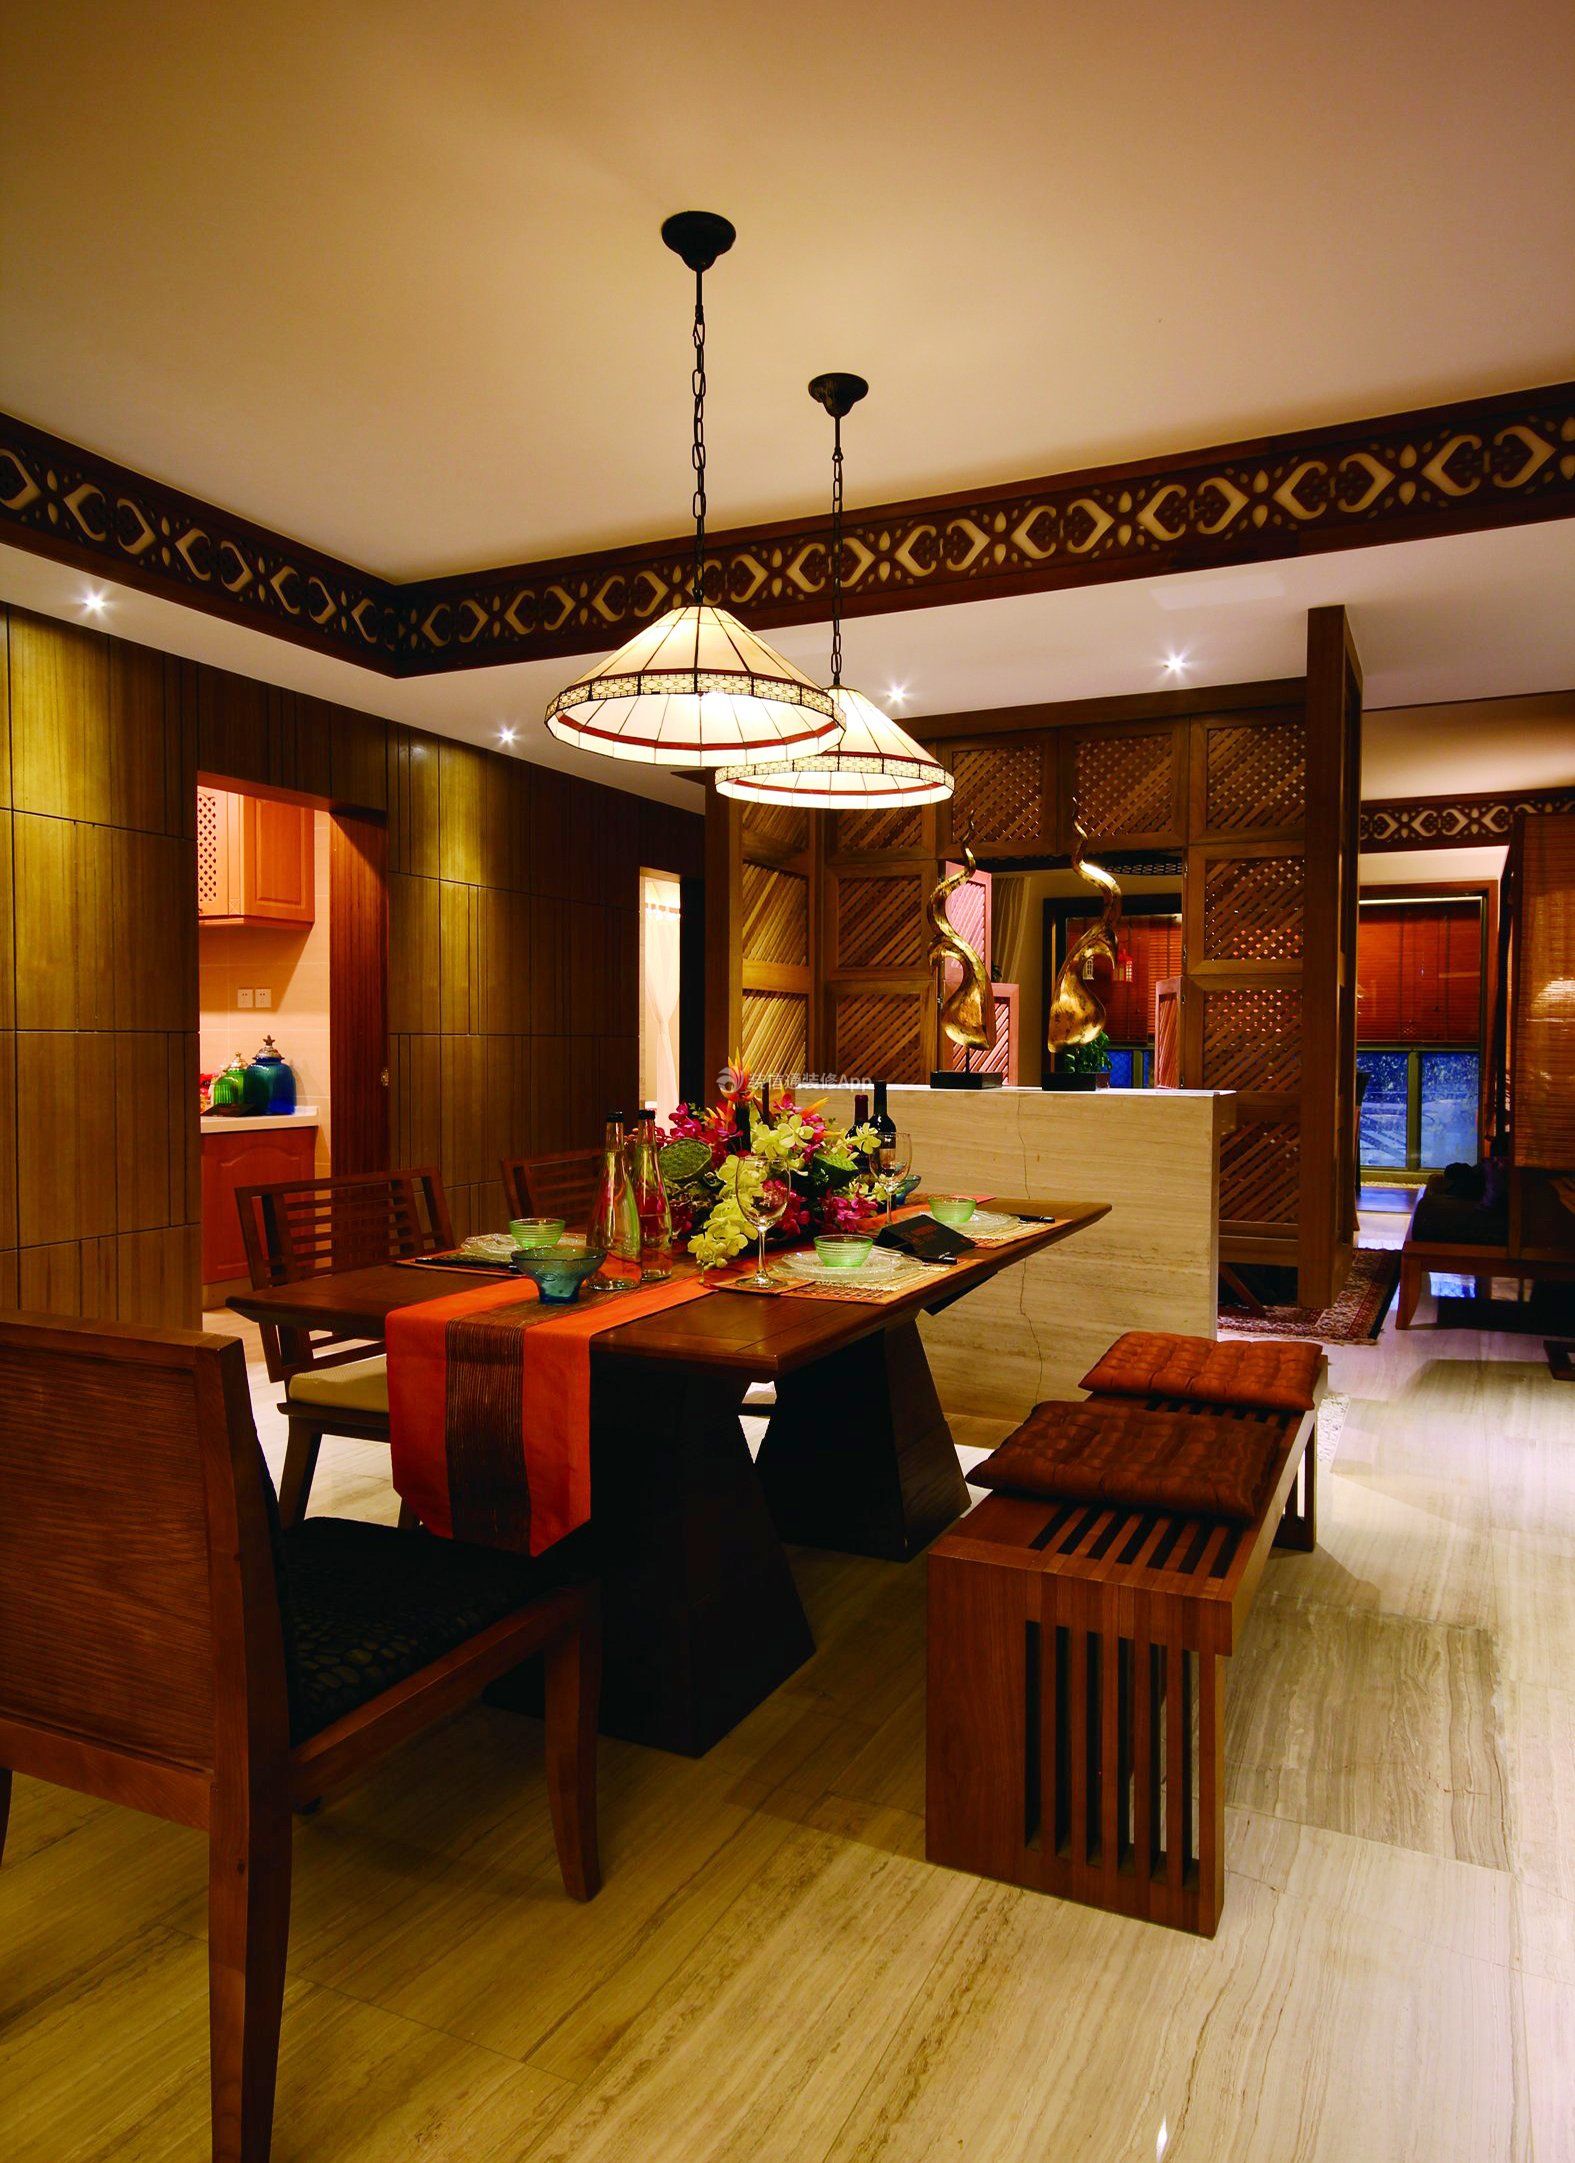 东南亚风格家居餐厅装修实景图